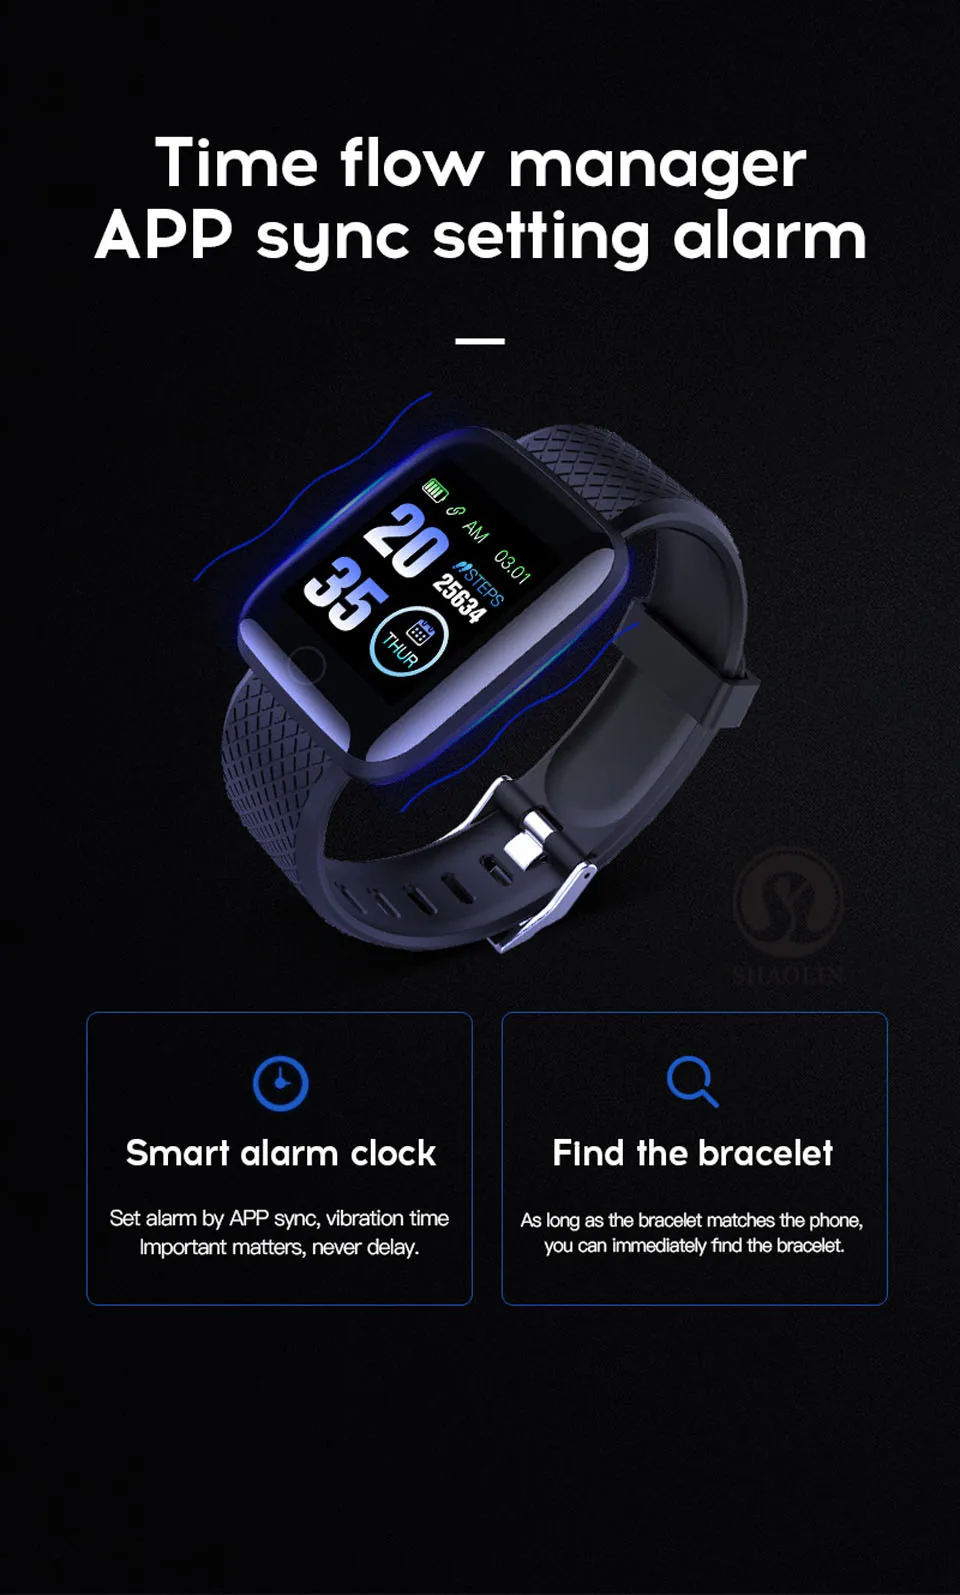 9 Smart Alarm Clock + Find The Bracelet